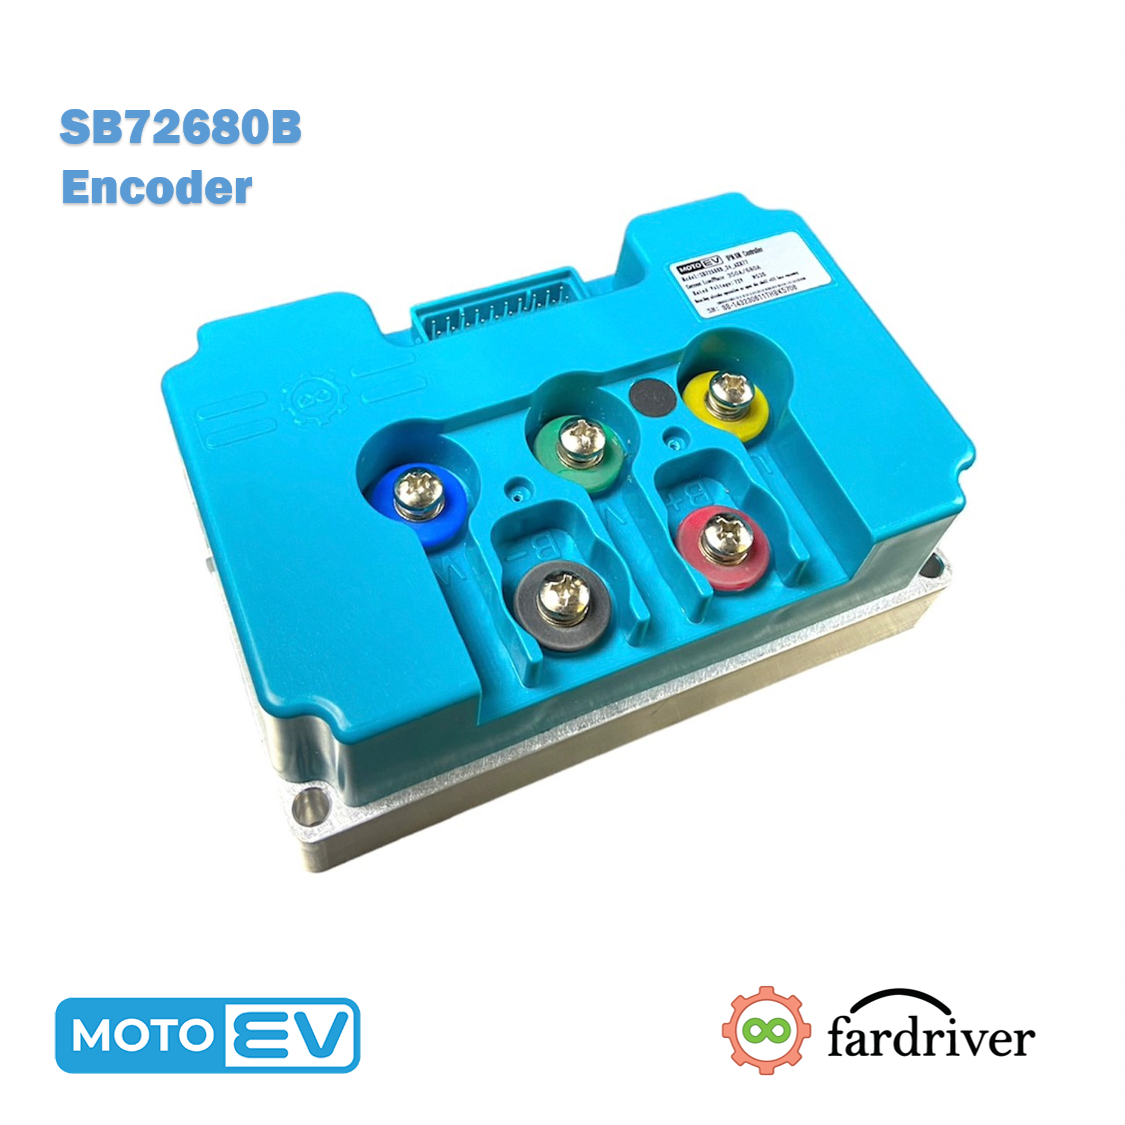 SB72680B Encoder 350A/680A